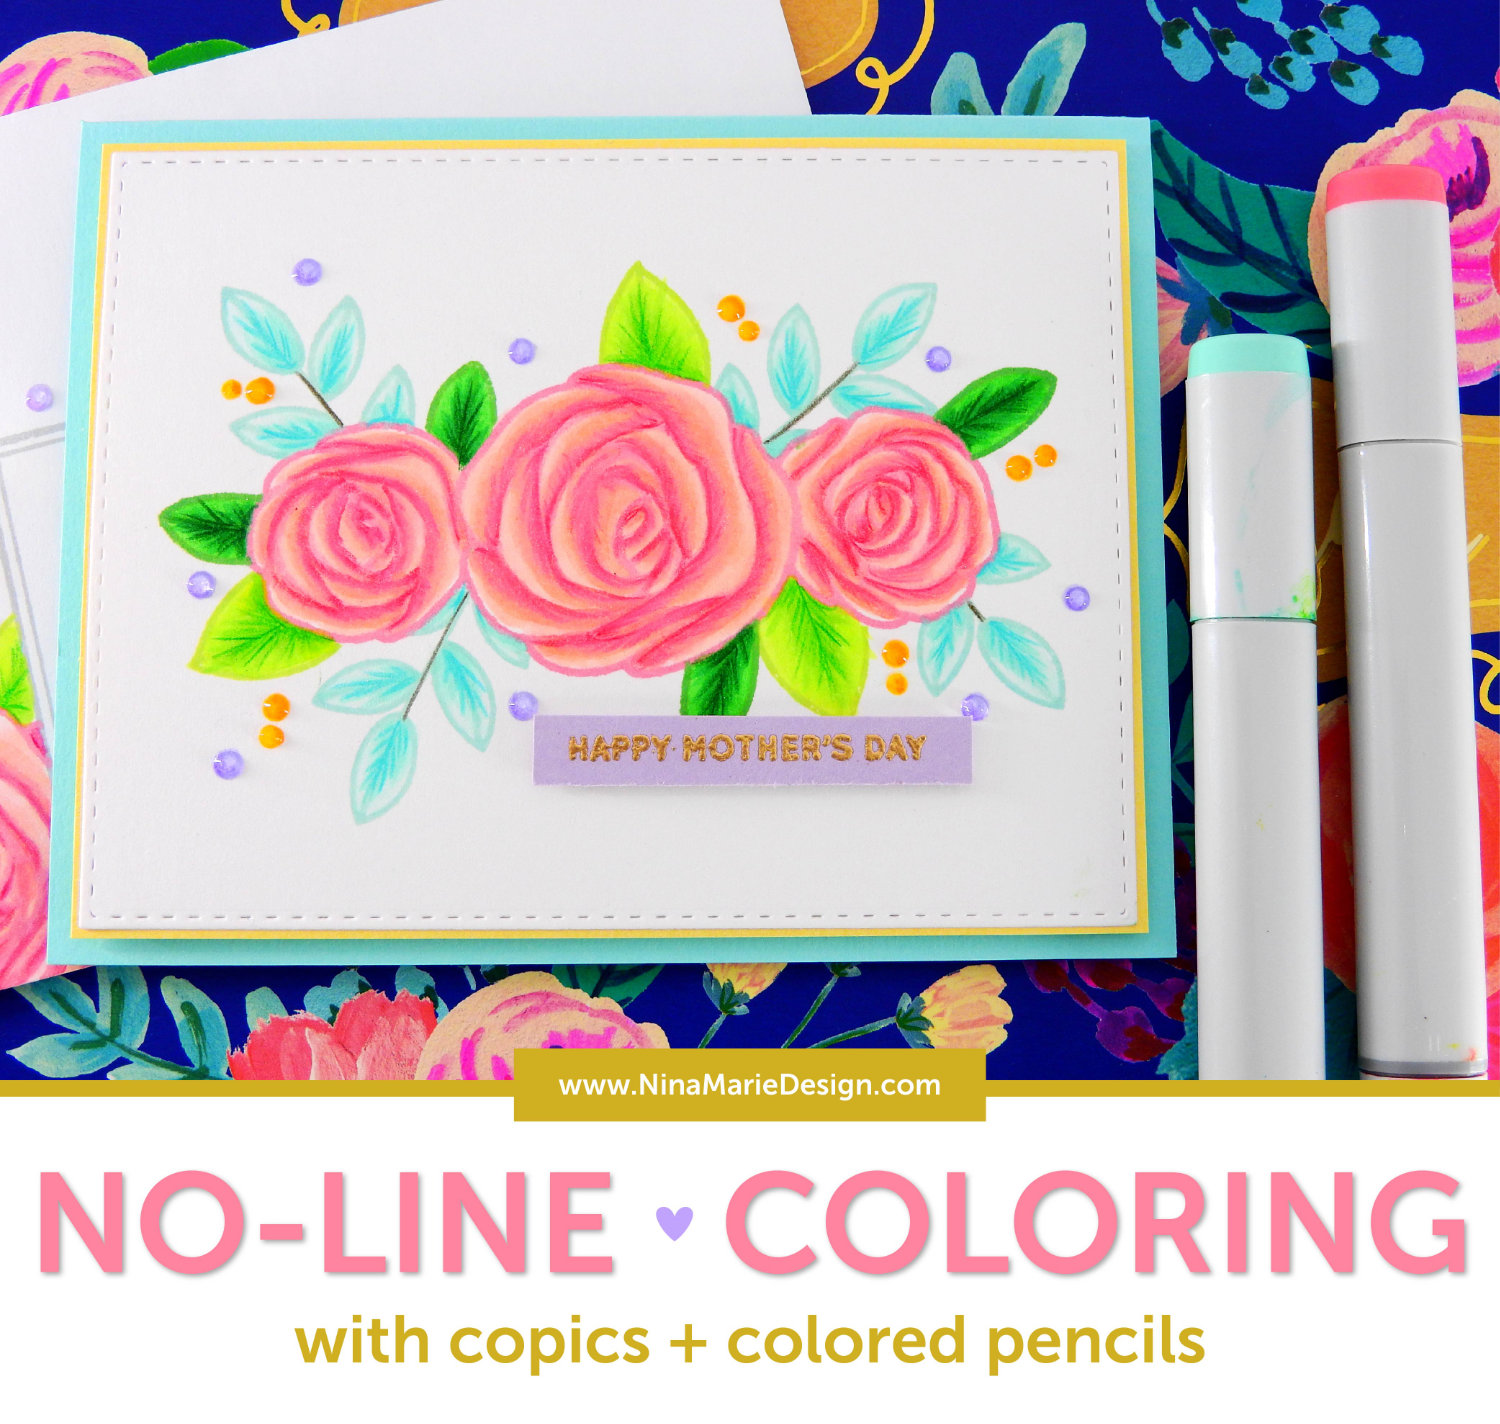 copic colored pencils